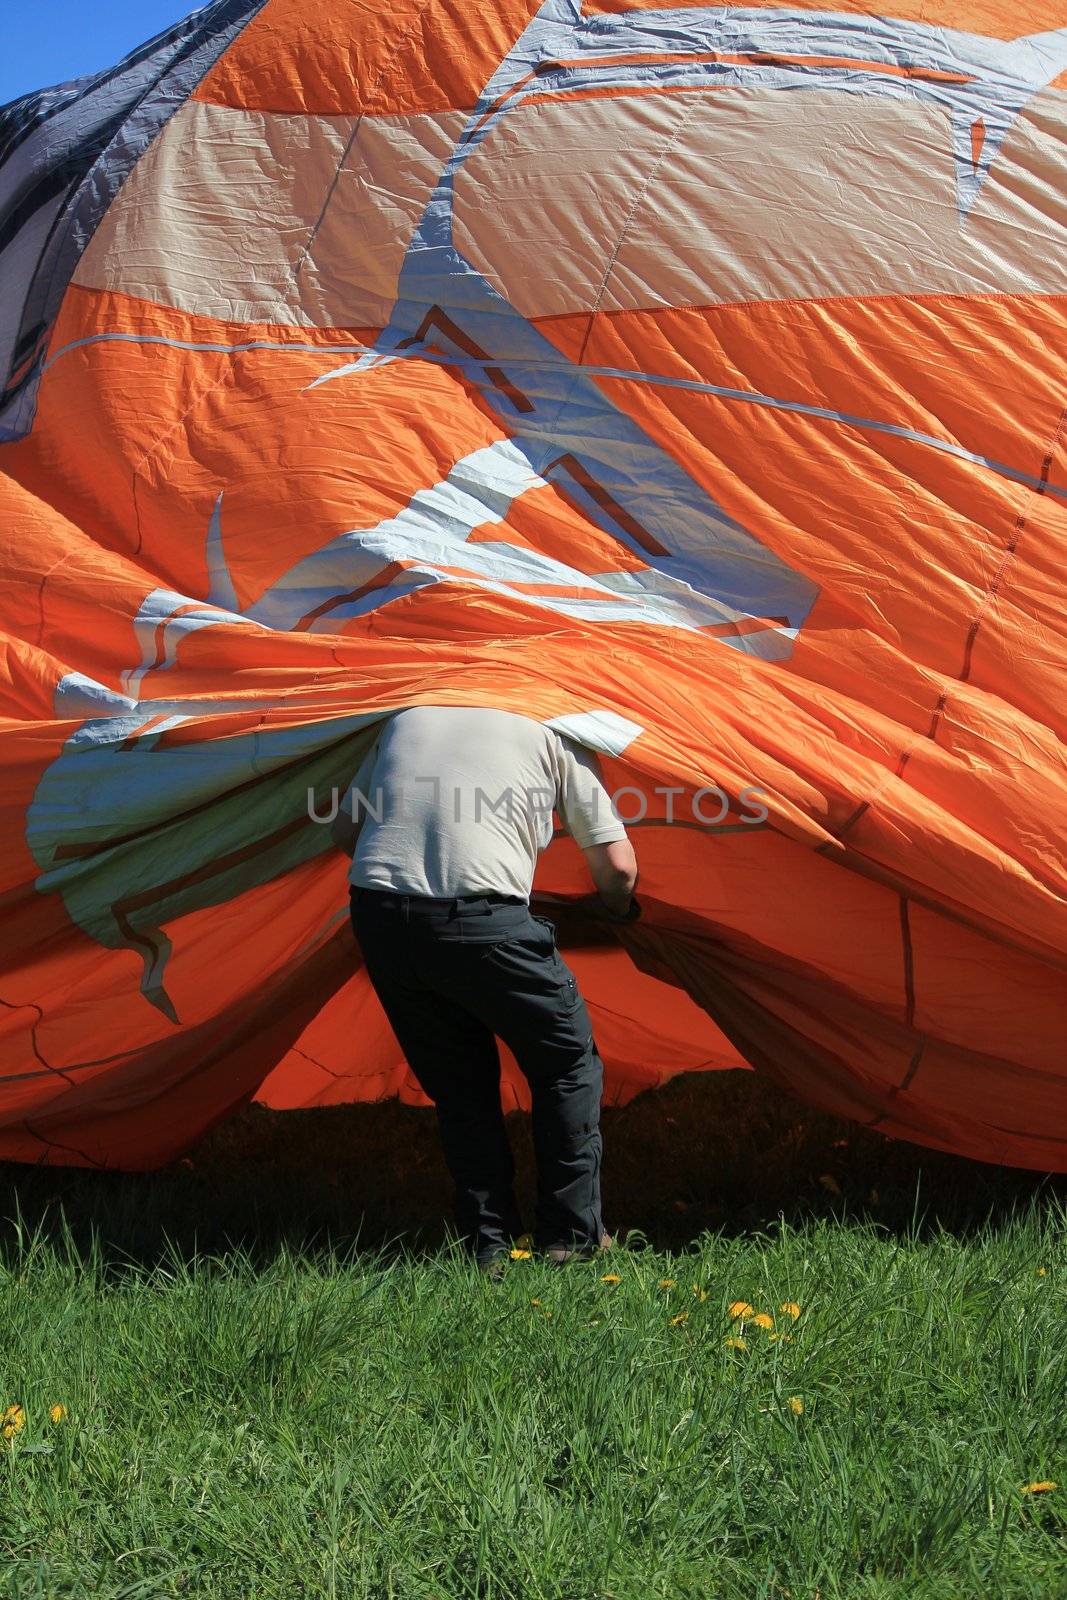 hot air balloon by mariephotos